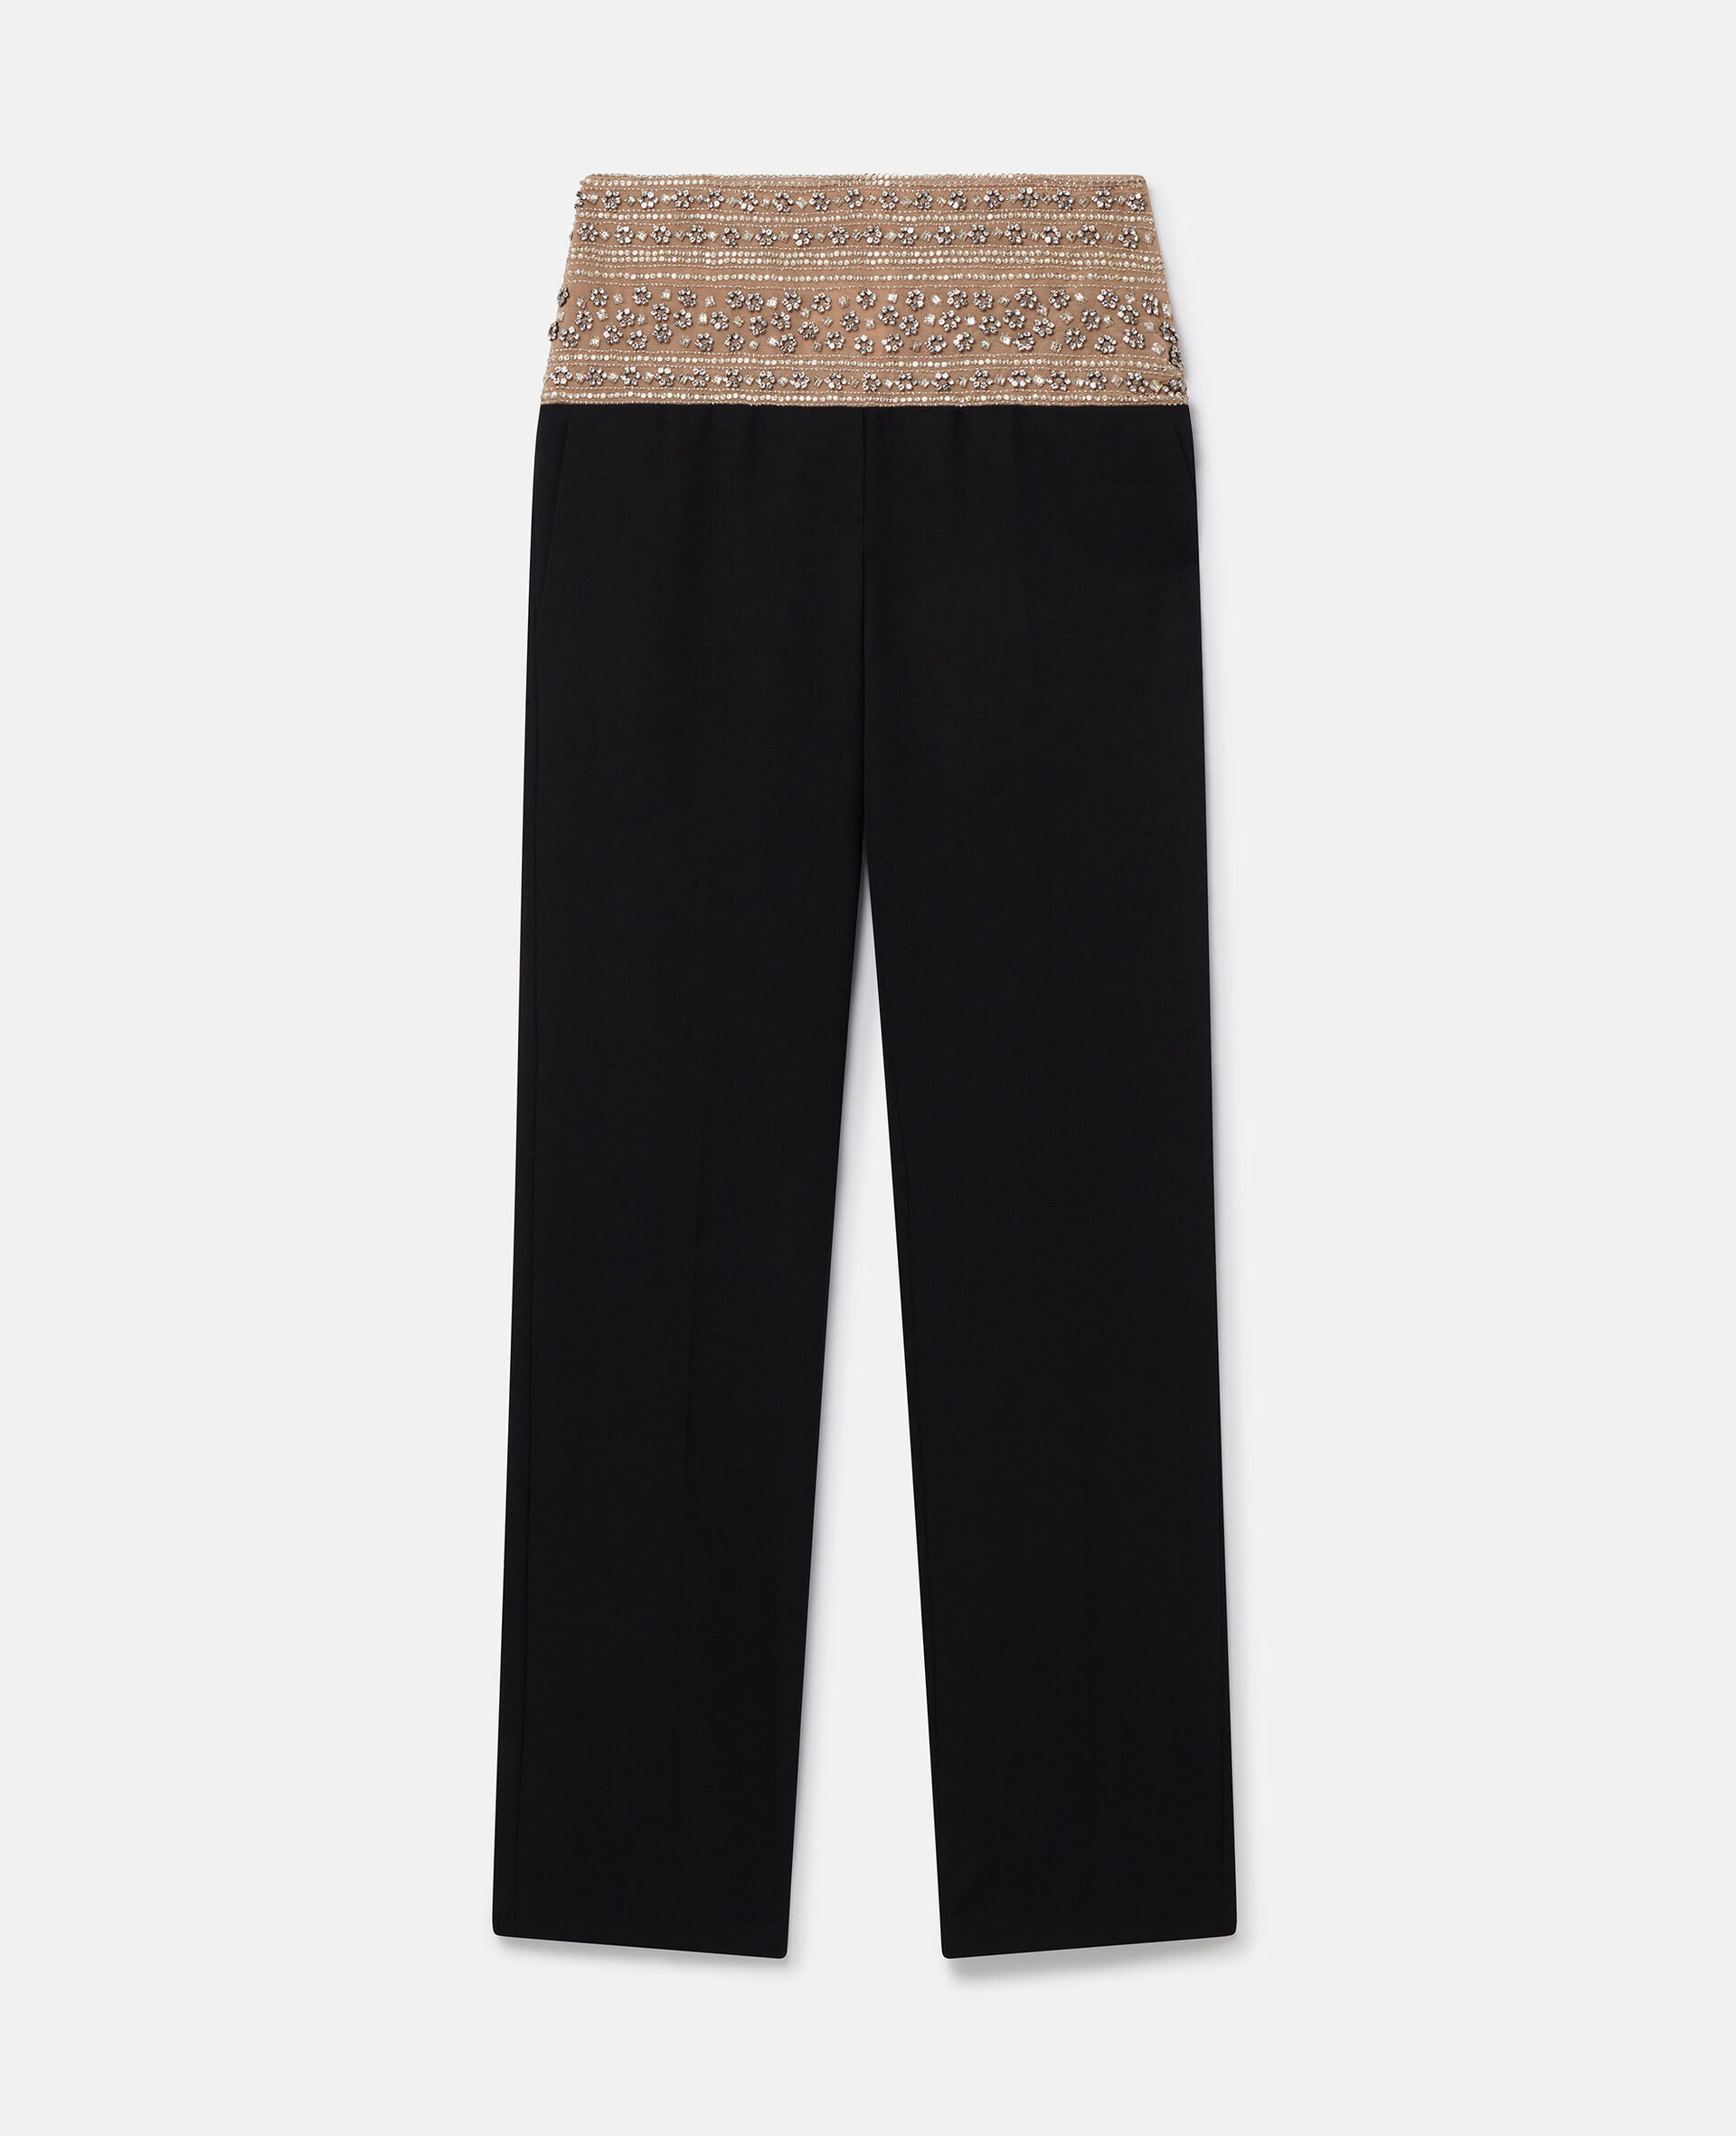 Pantalon en laine à cristaux-Noir-large image number 0